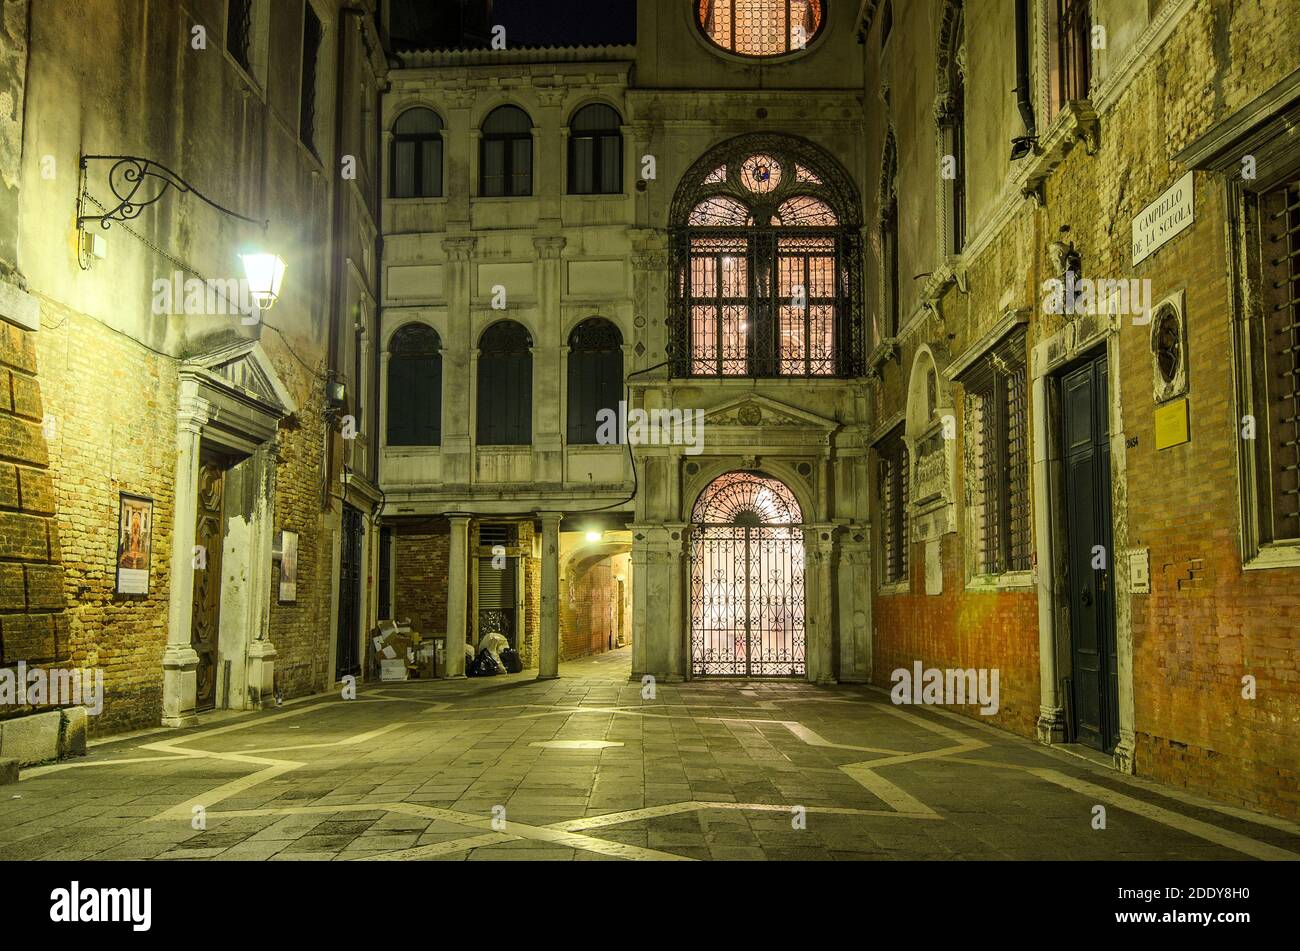 Campiello de la Scuola in San Polo Sestiere by night - Venice, Italy Stock Photo